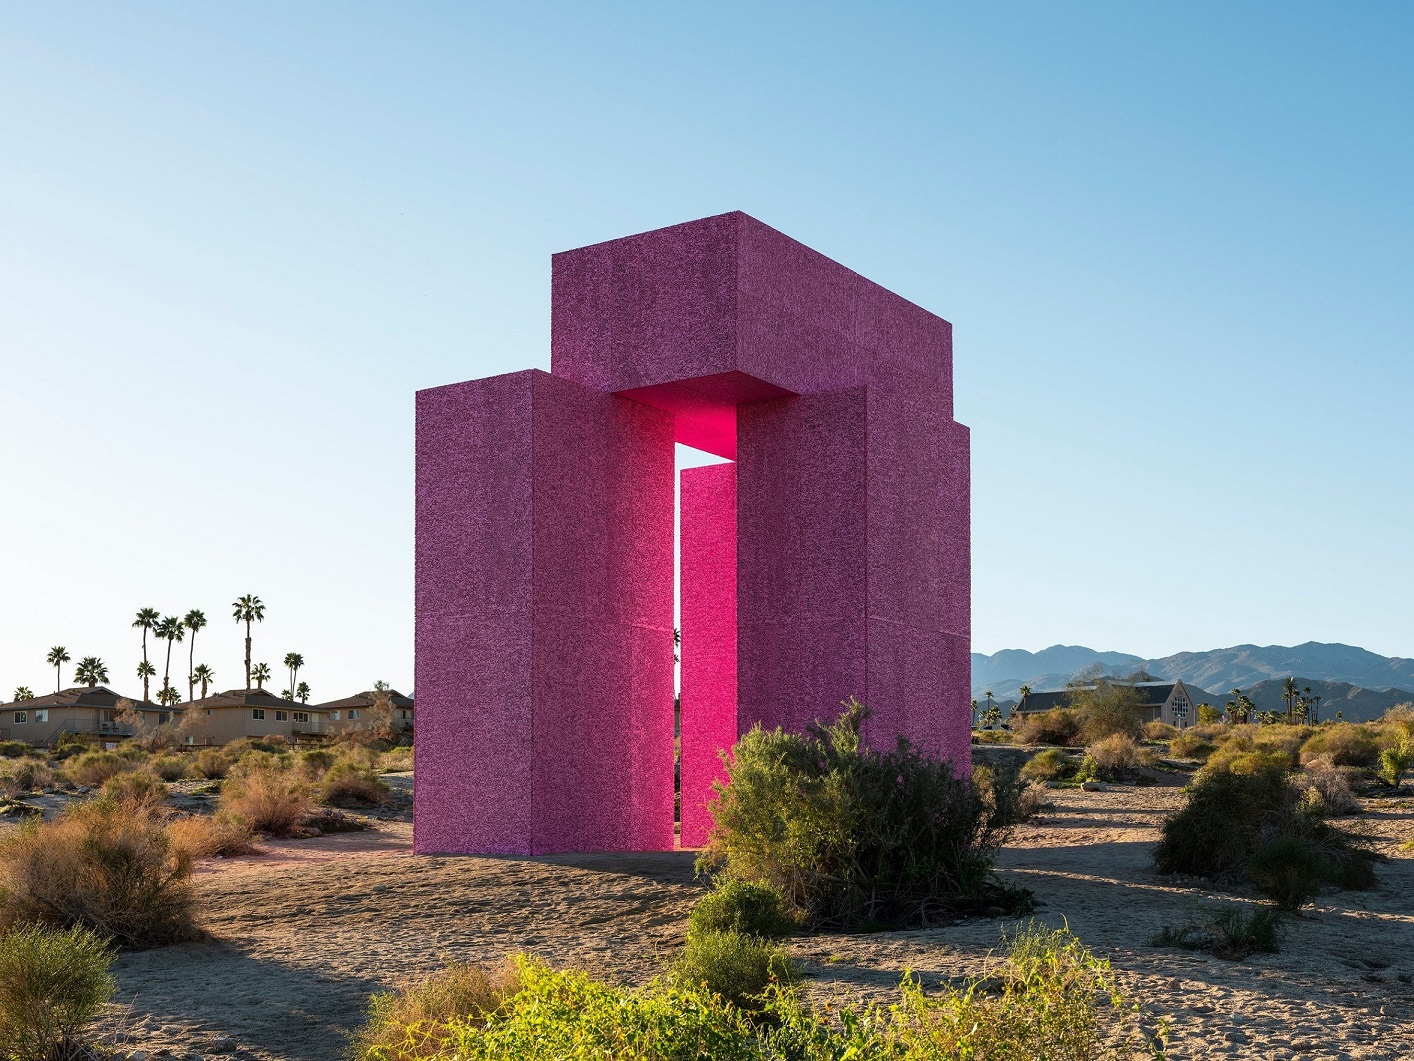 Superflex artwork showing a pink sculpture in a Californian desert